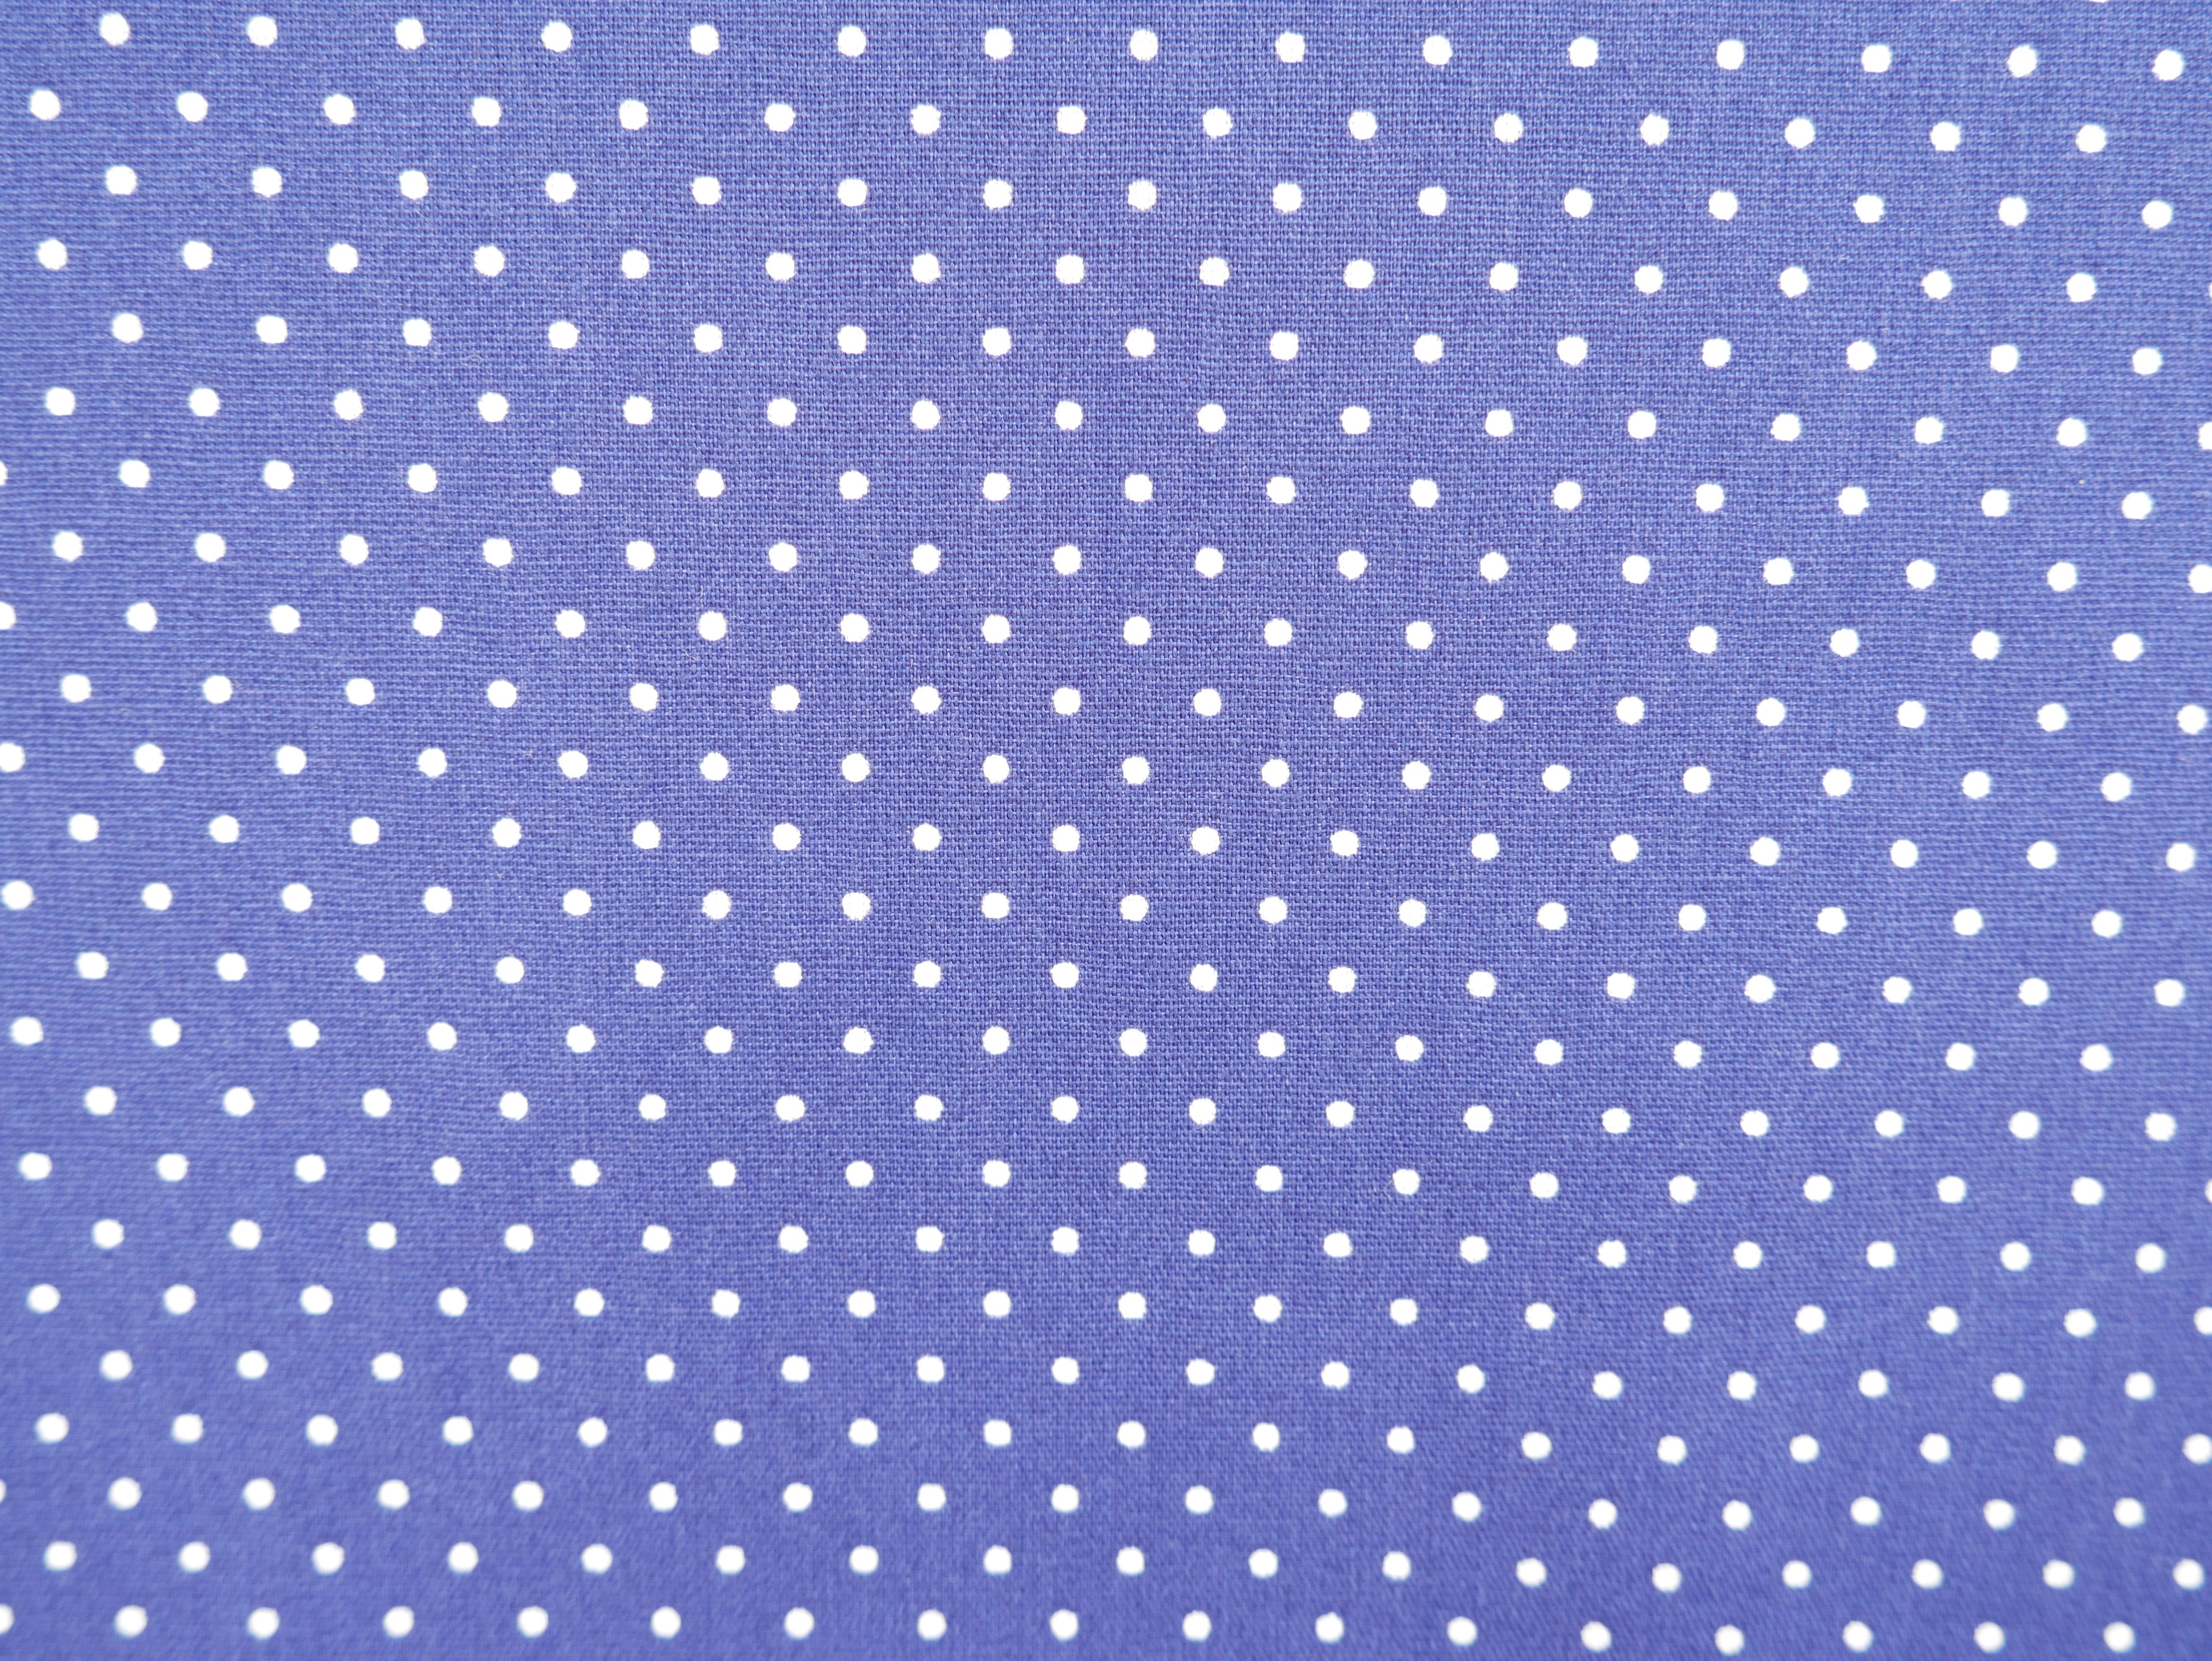 Pin-Spot Printed Cotton, Cobalt £8.50 p/m-Fabric-Flying Bobbins Haberdashery